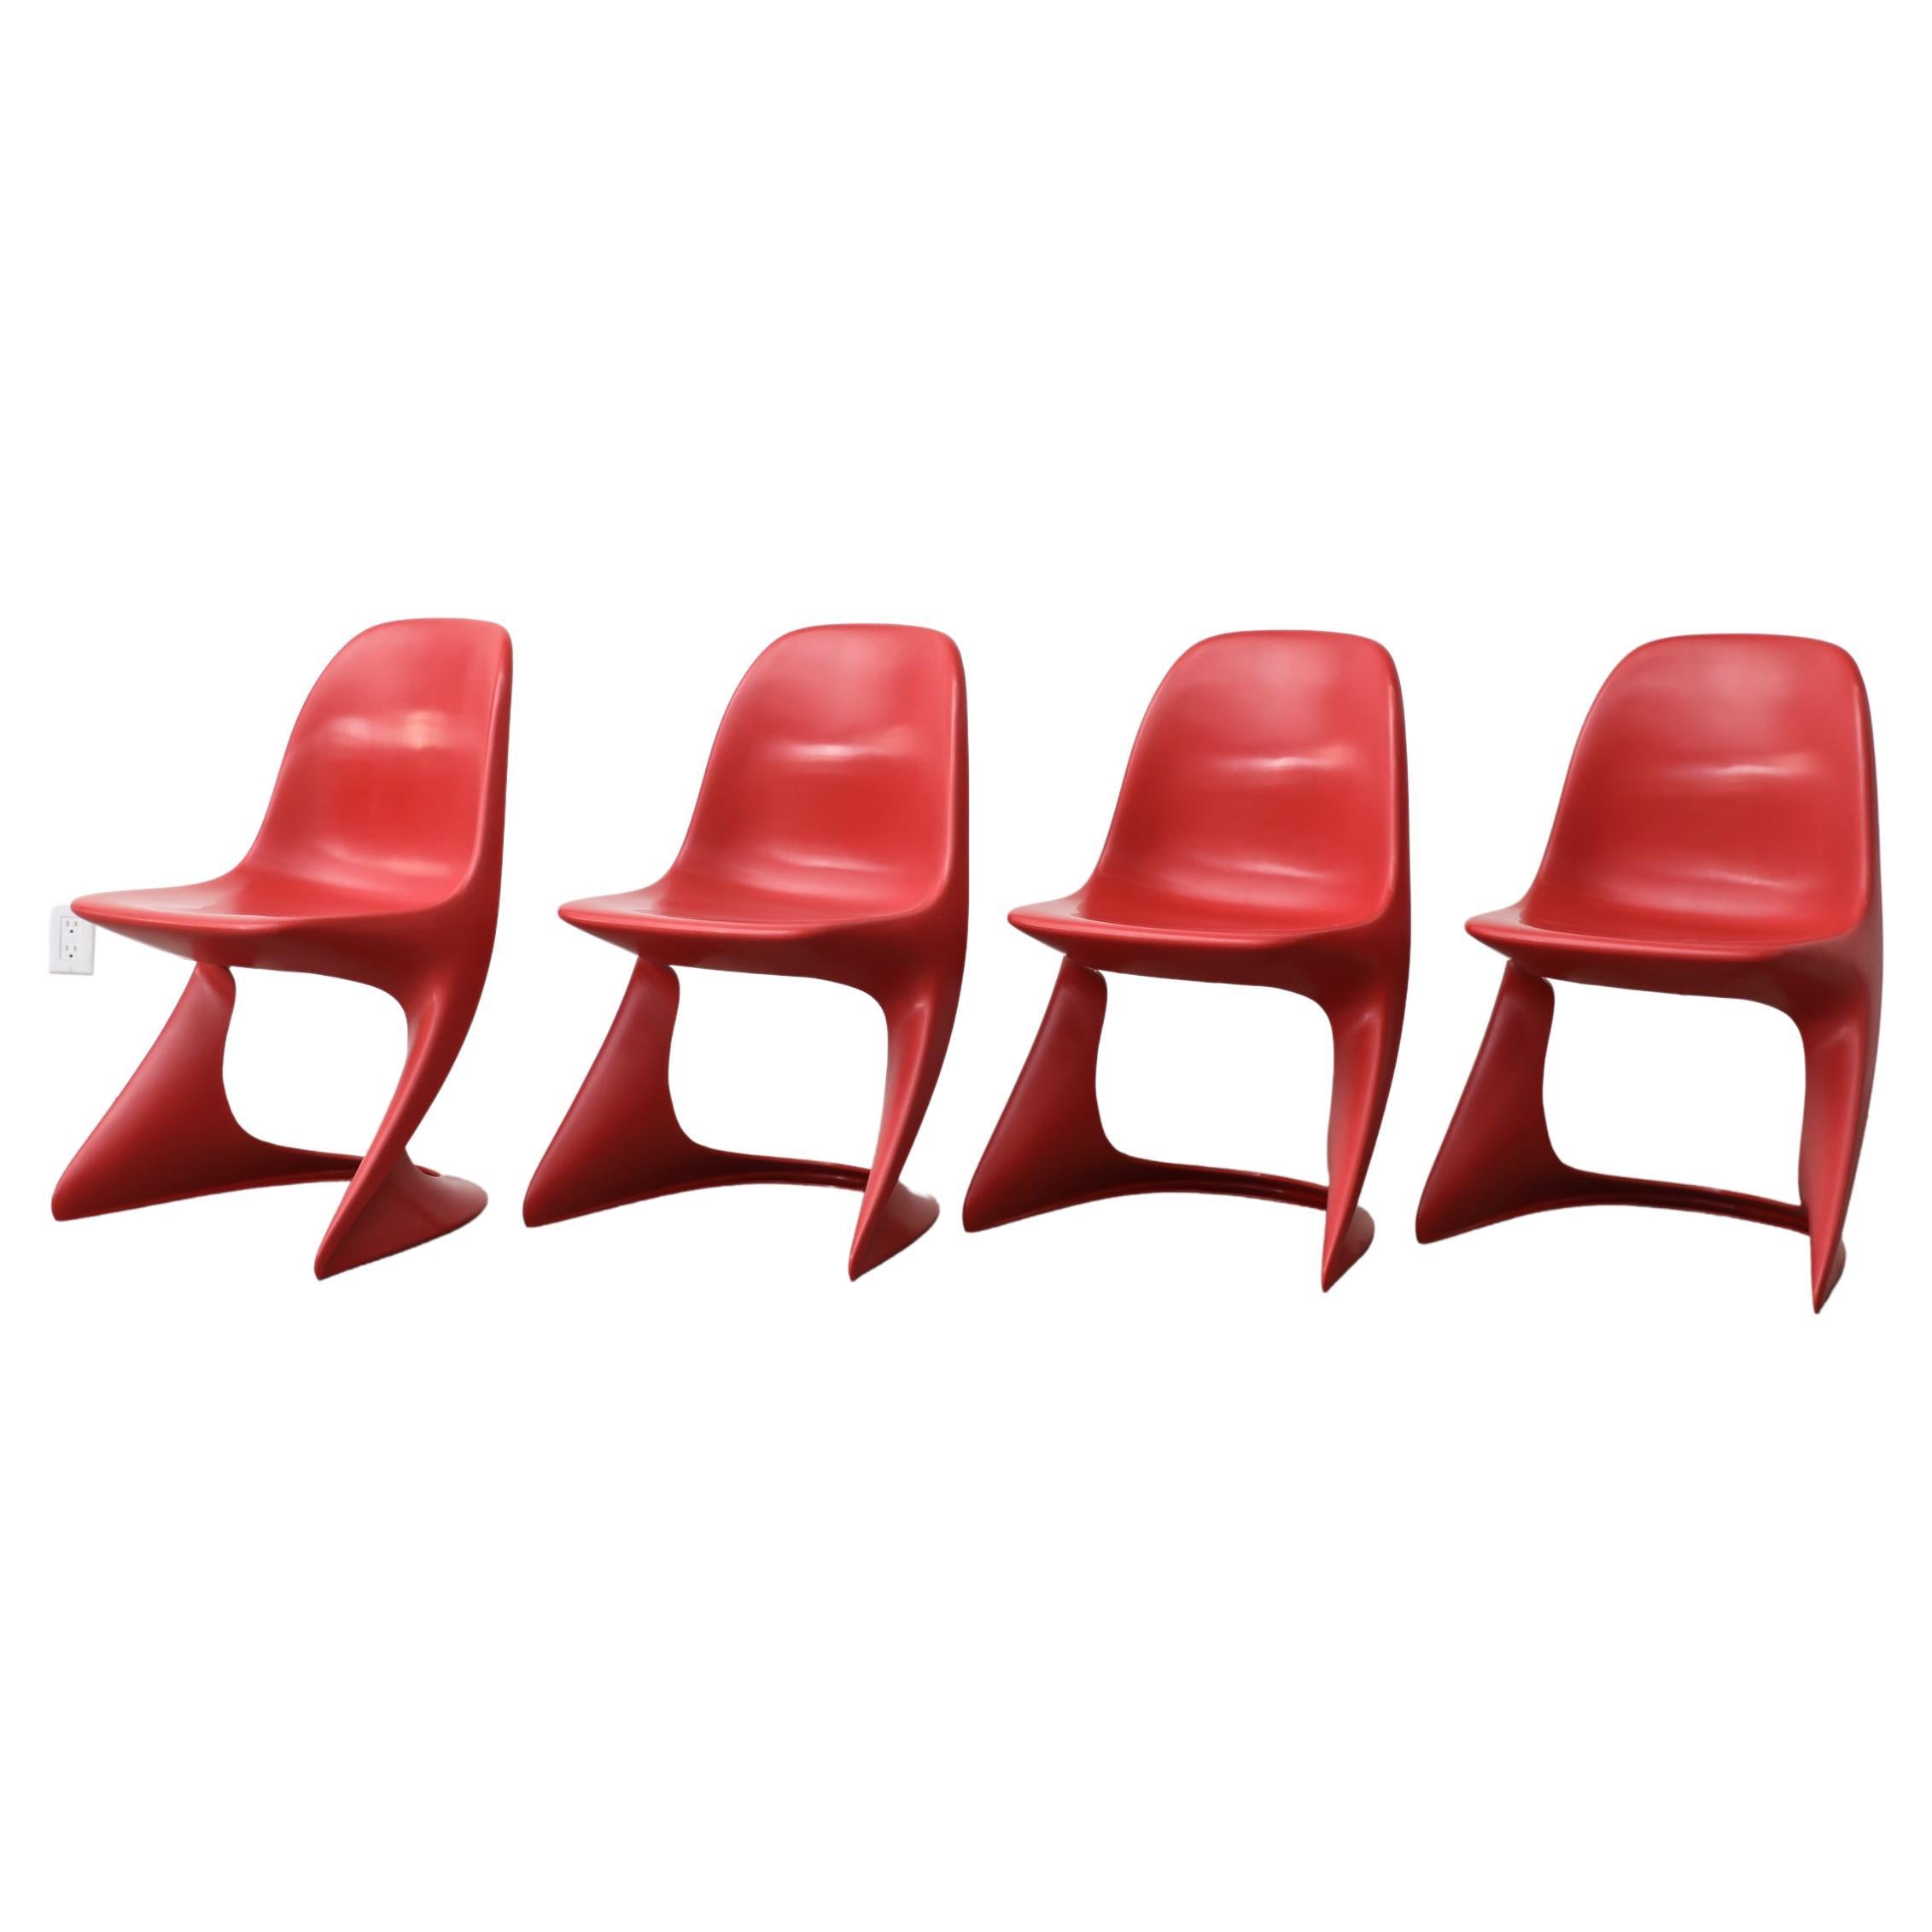 Satz von 4 Stapelbaren roten Casalino-Stühlen in Kindergröße von Alexander Begge, Space Age